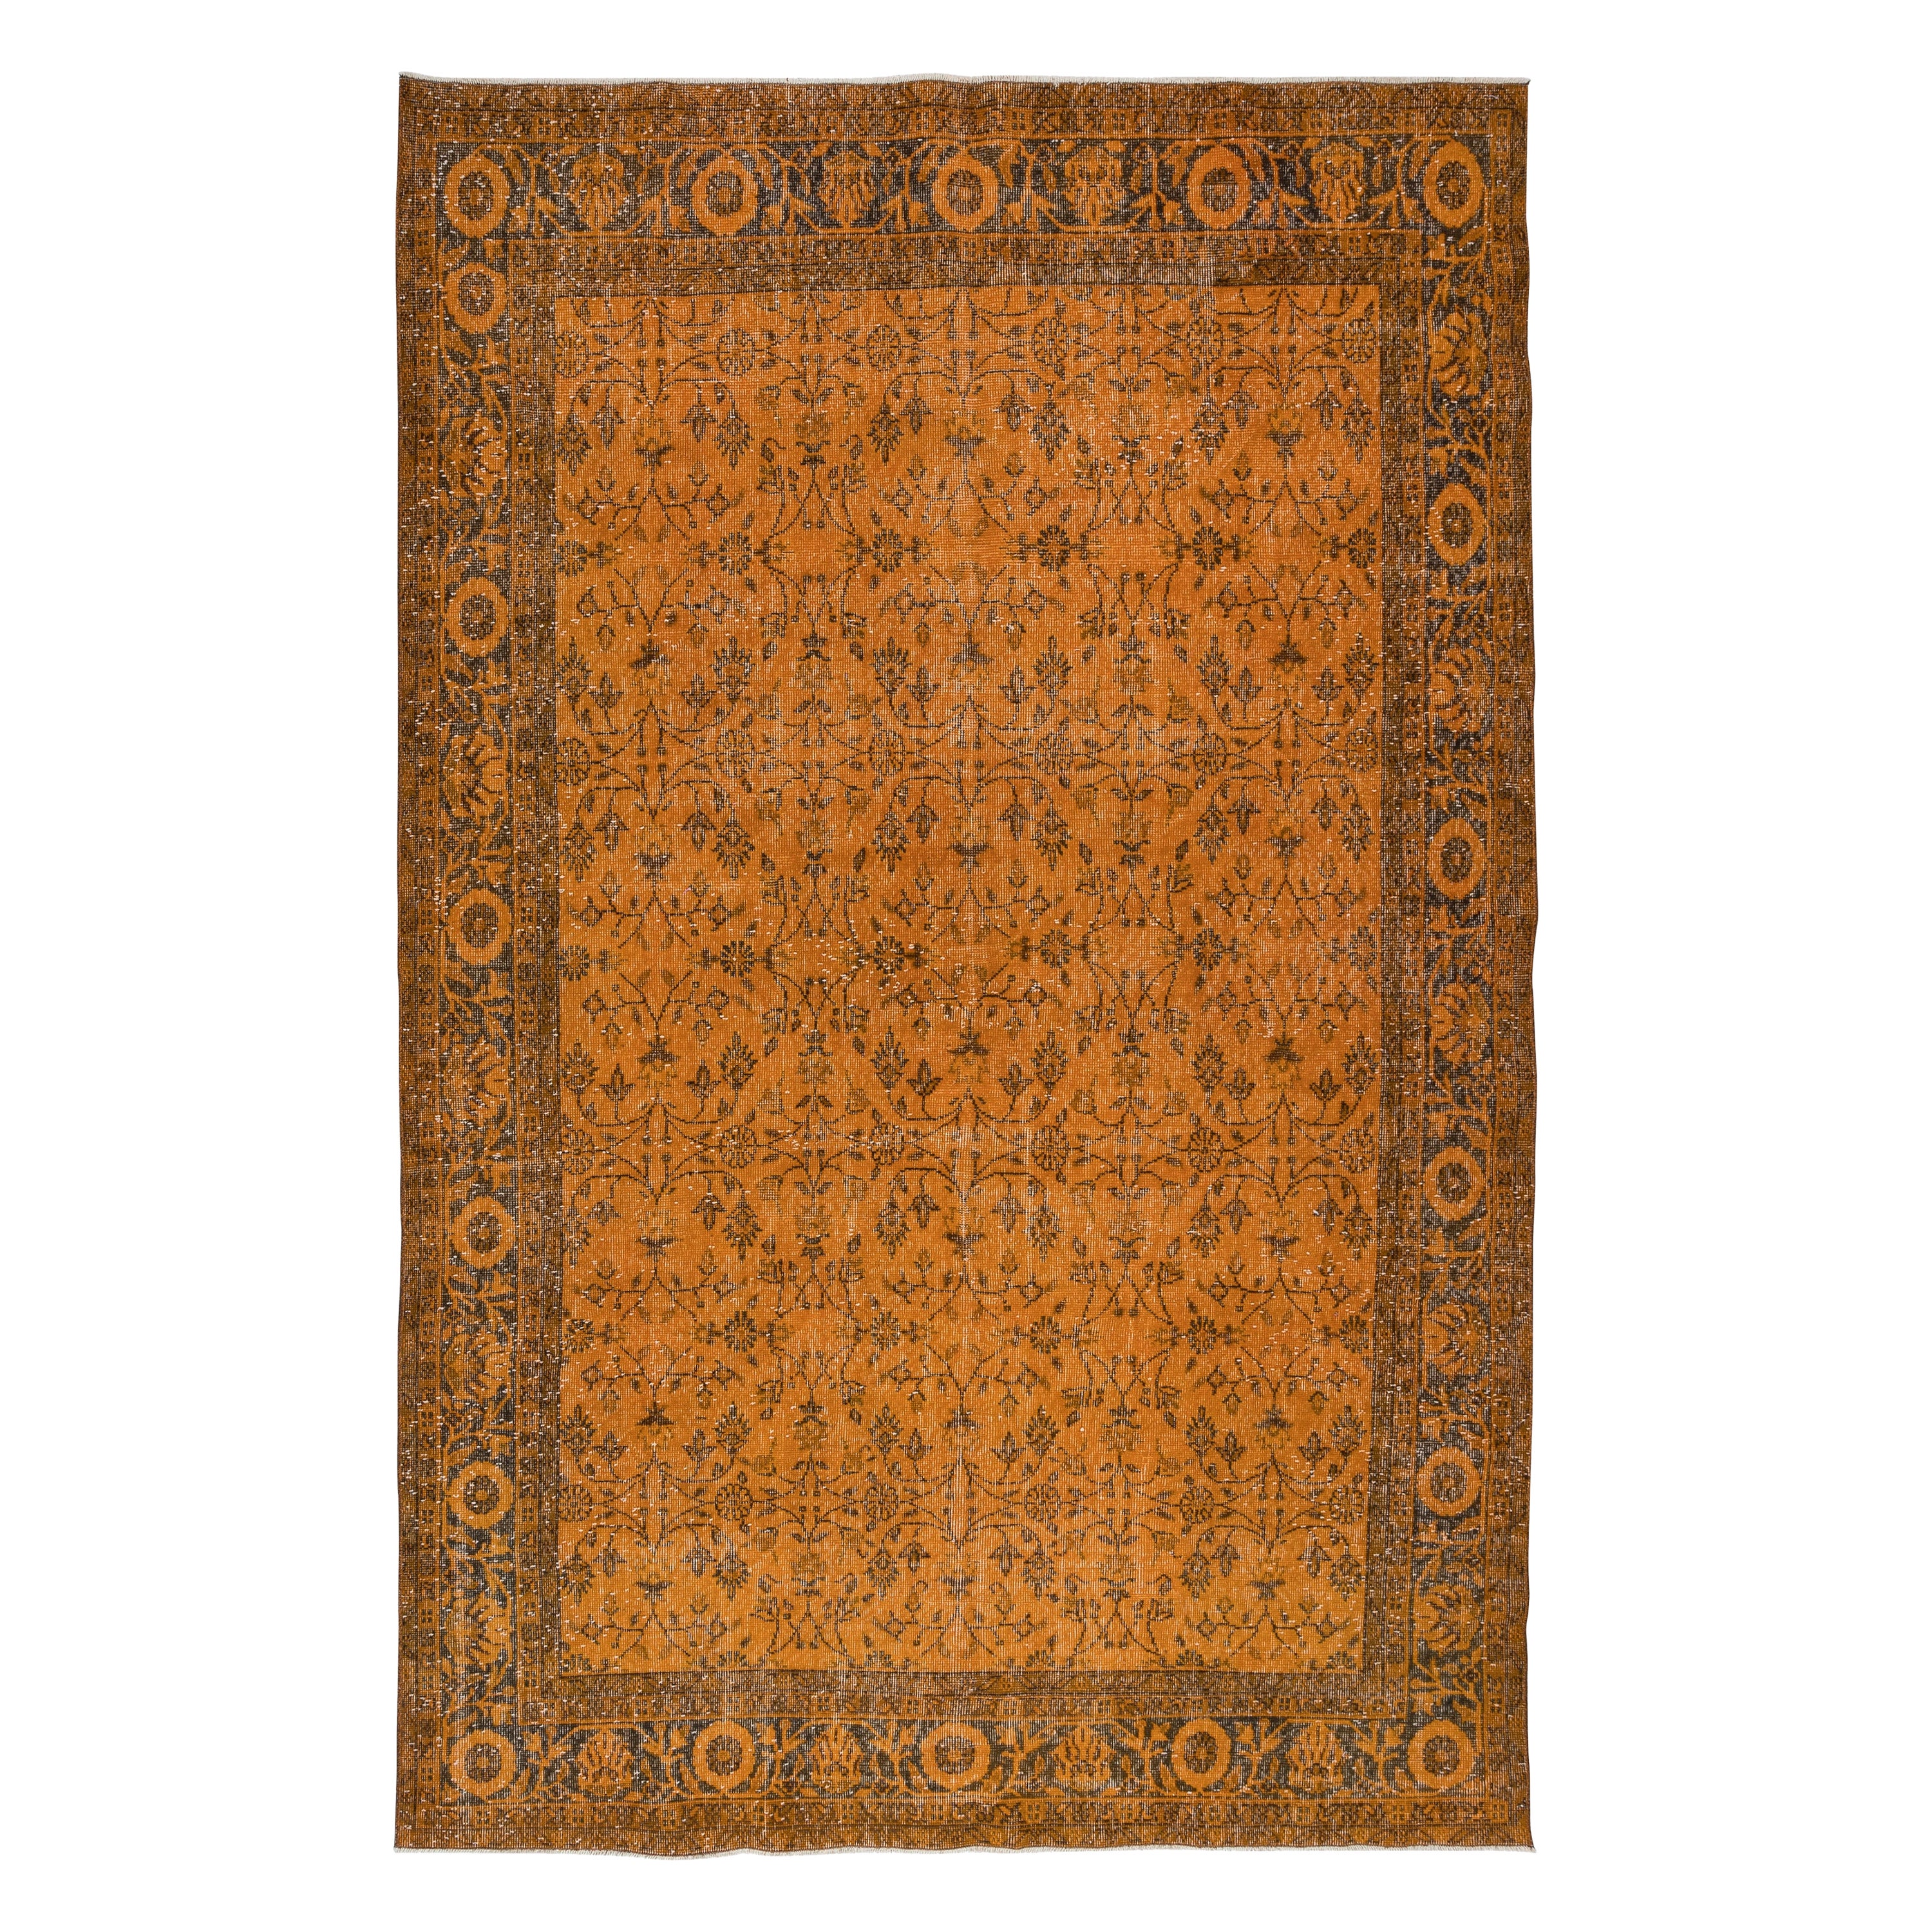 6.7x10.5 Ft Handmade Rug with All-Over Botanical Design, Orange Turkish Carpet For Sale